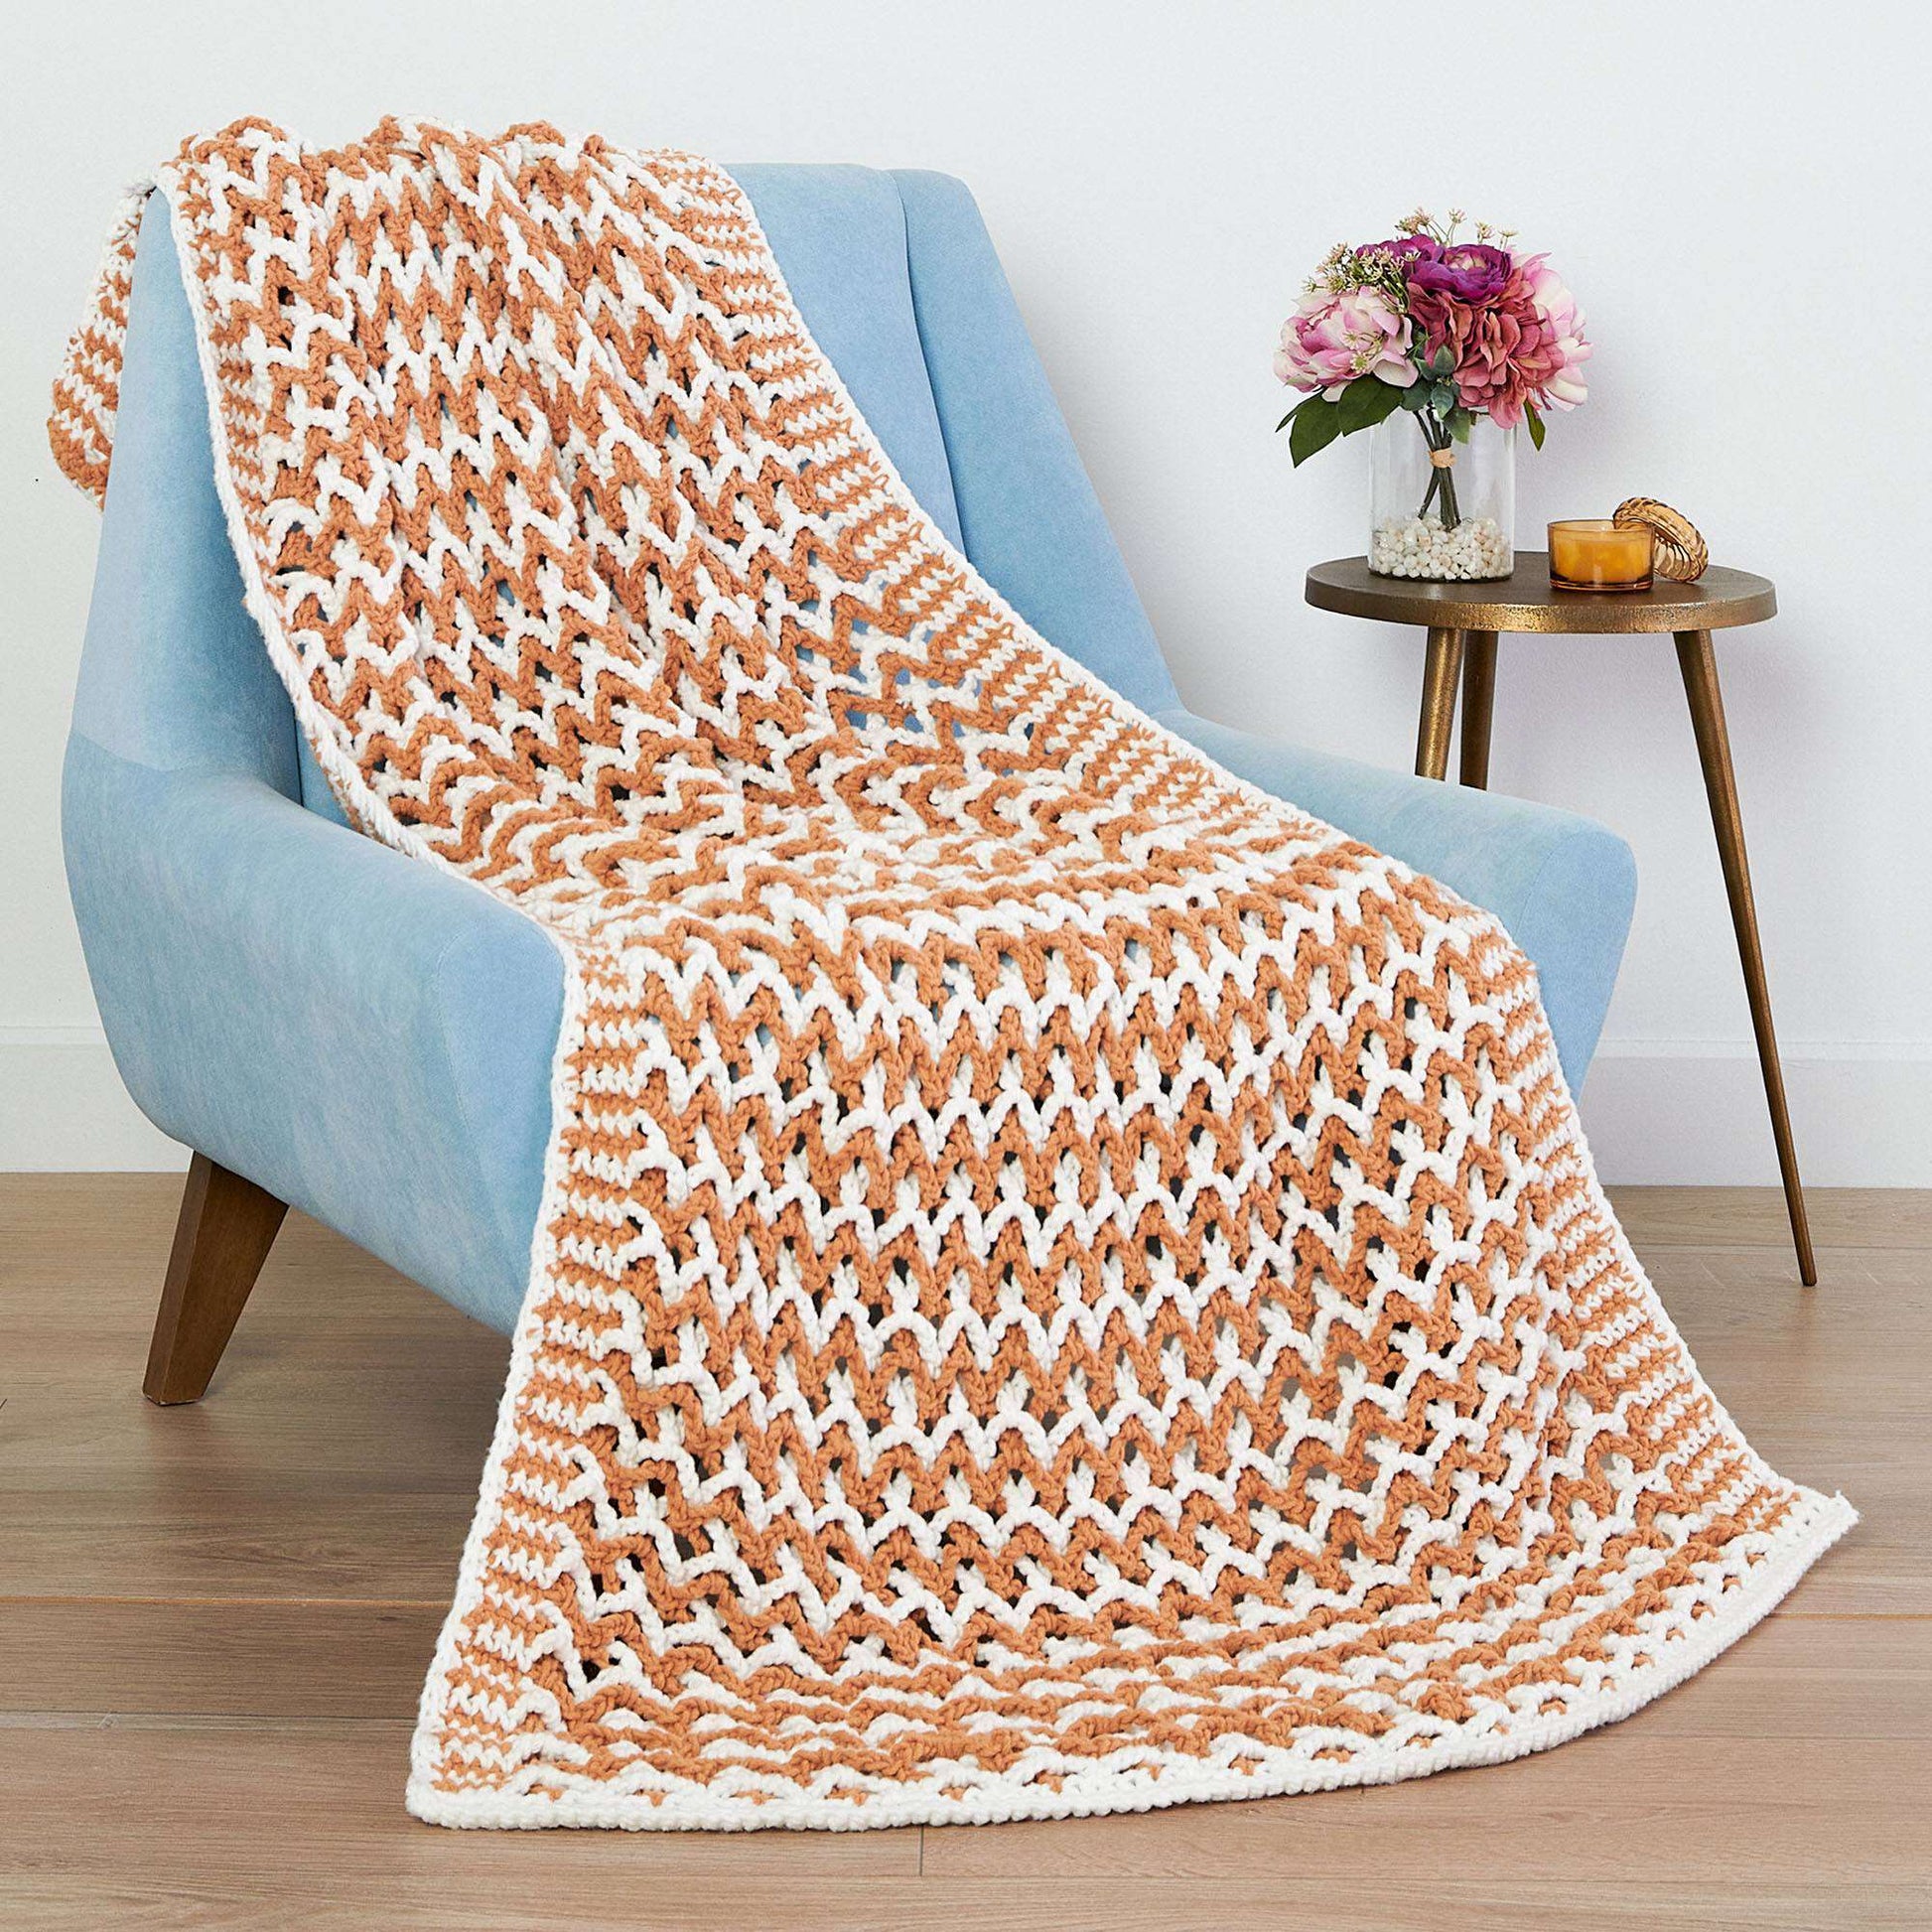 Free Bernat Lattice Crochet Blanket Pattern